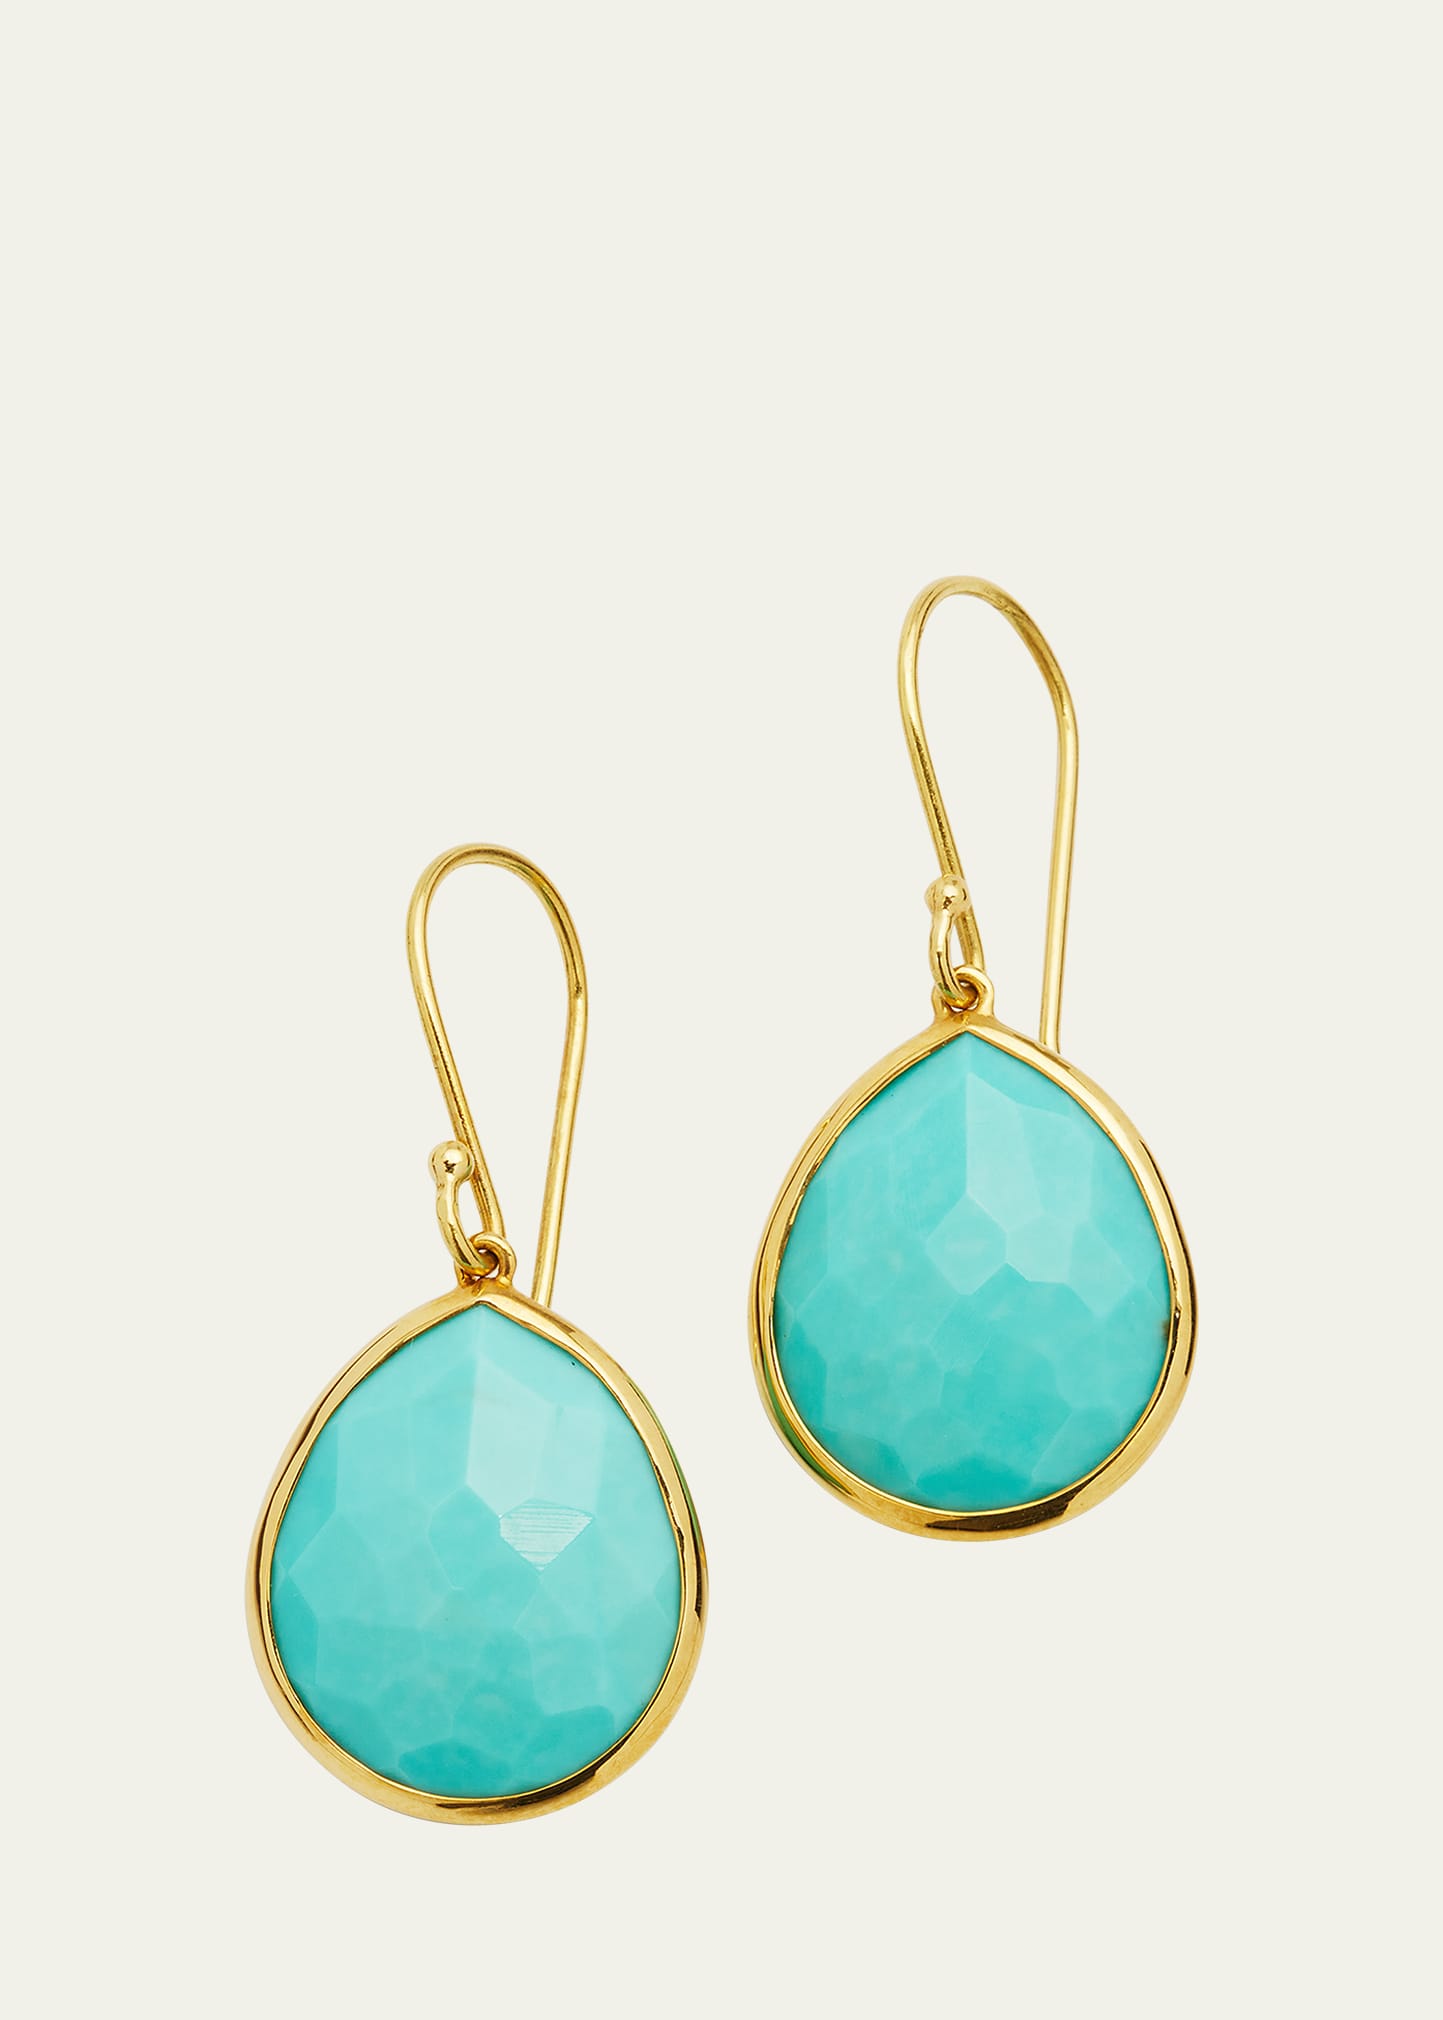 Ippolita Small Teardrop Earrings In 18k Gold In Turquoise